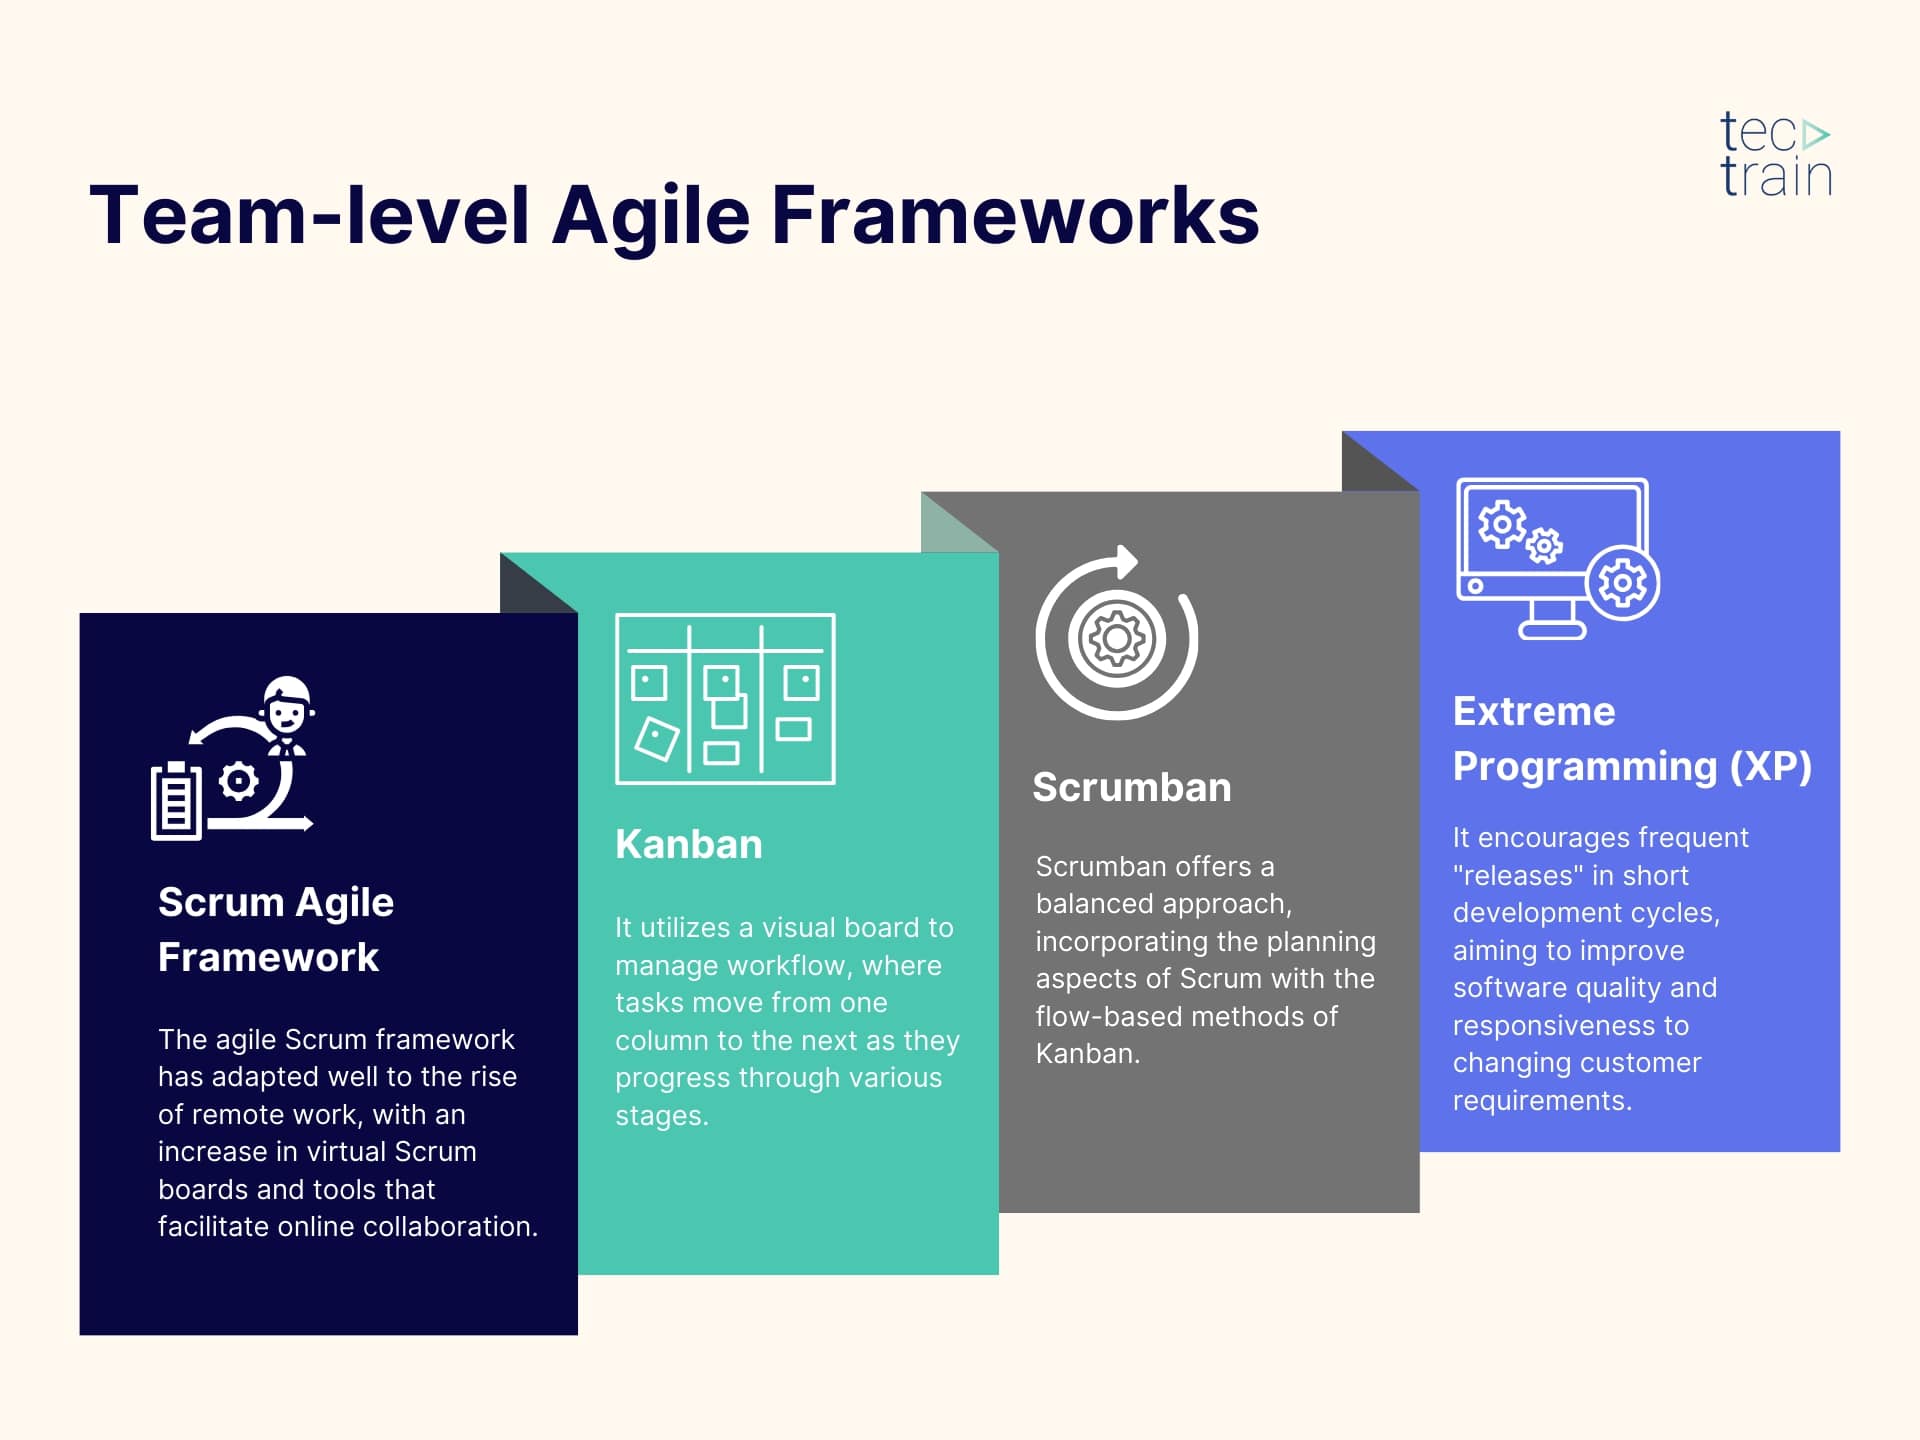 Team-level agile frameworks (Scrum, Kanban, Scrumban, Extreme Programming - XP) 